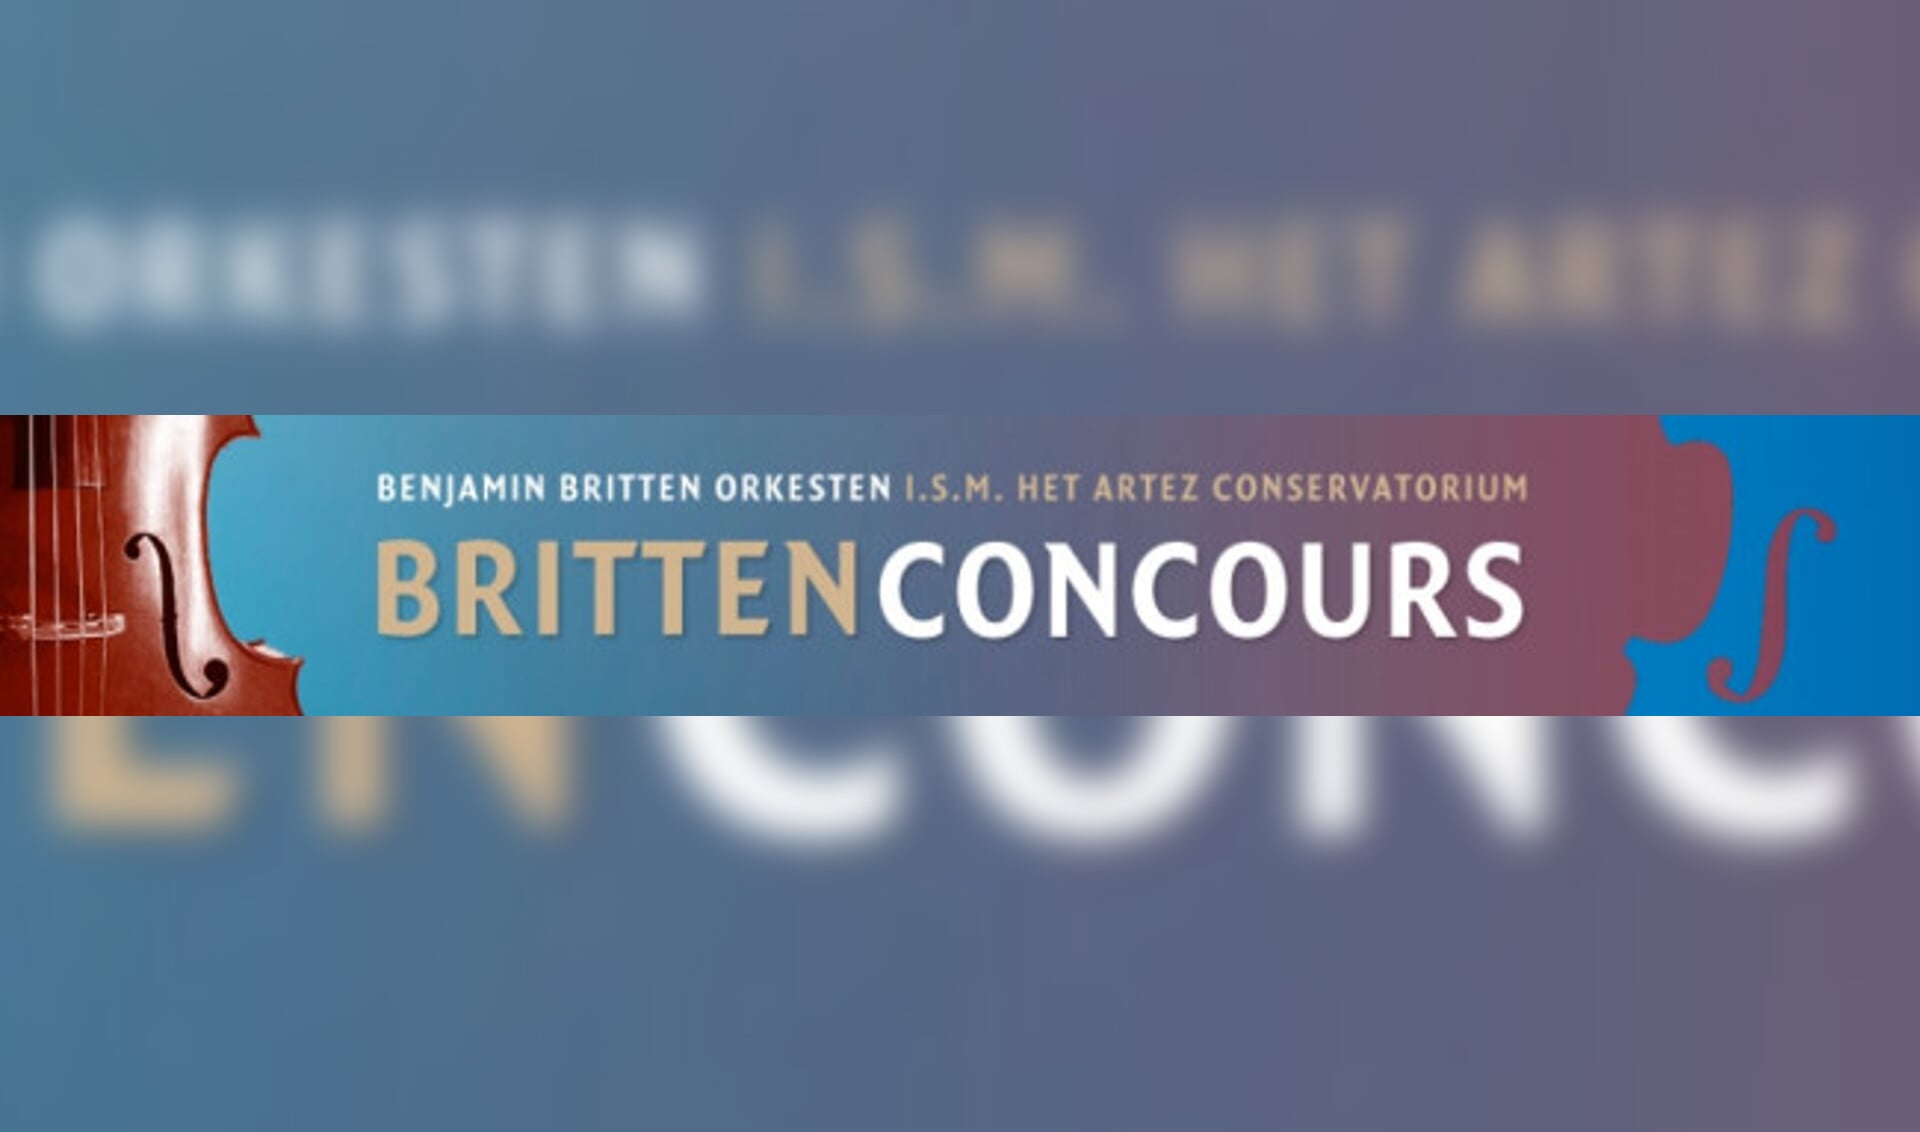 Het Britten Concours 2015: Beleef het prachtige cello- en altvioolrepertoire door de strijkers van de toekomst!